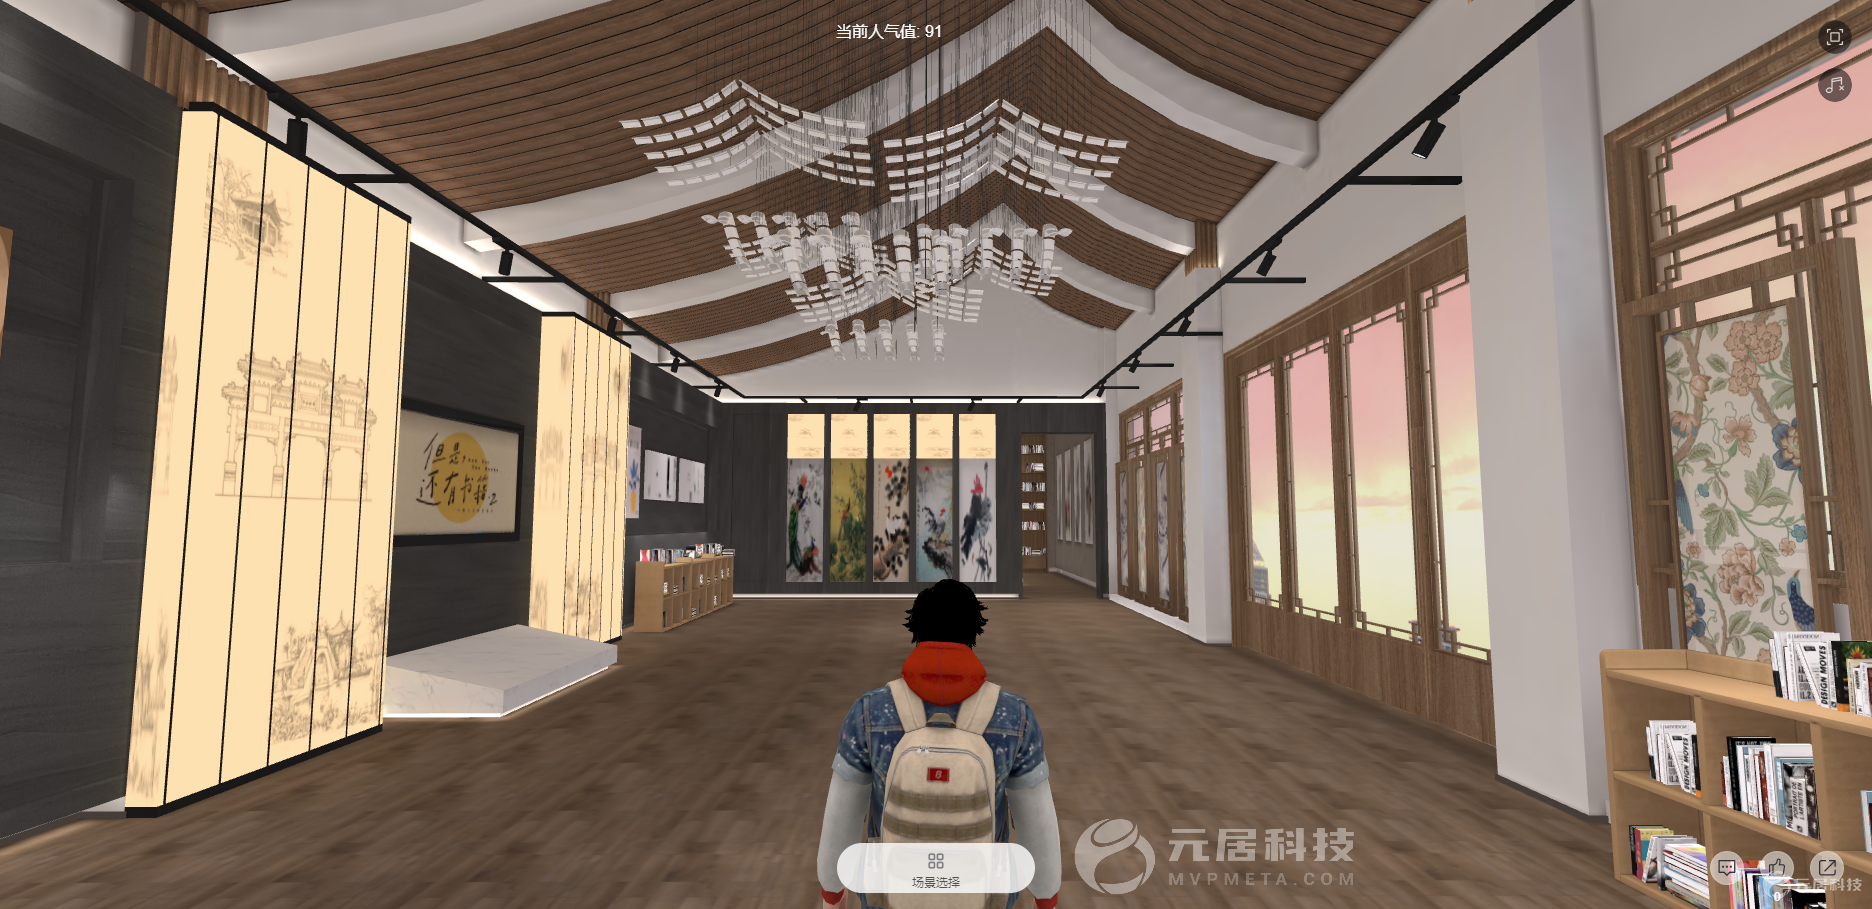 3D虚拟博物馆